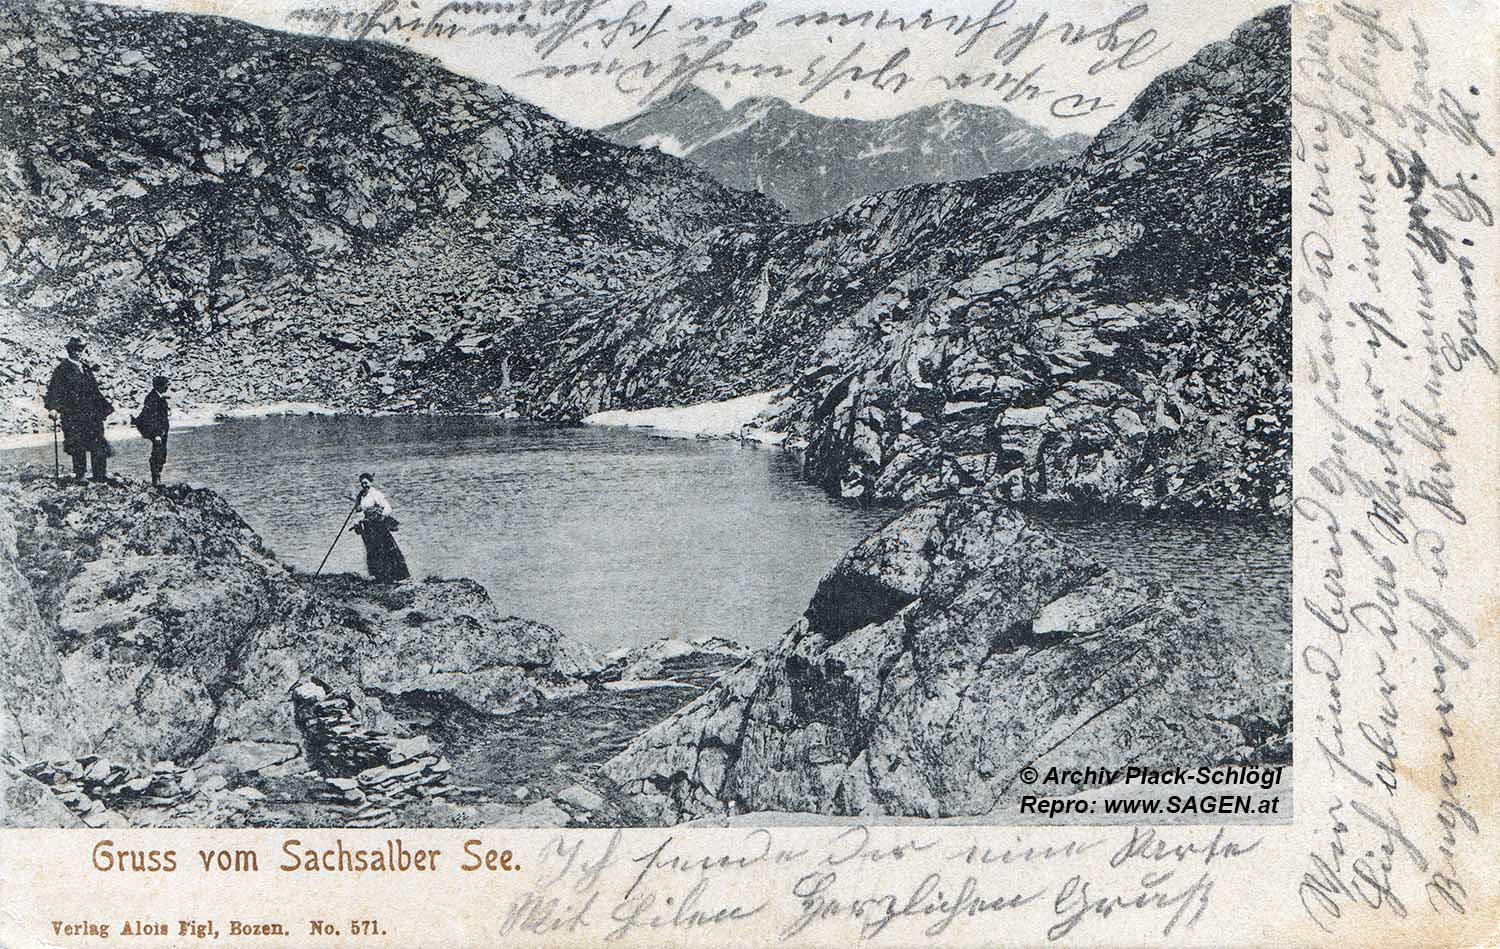 Gruß vom Sachsalber See 1905